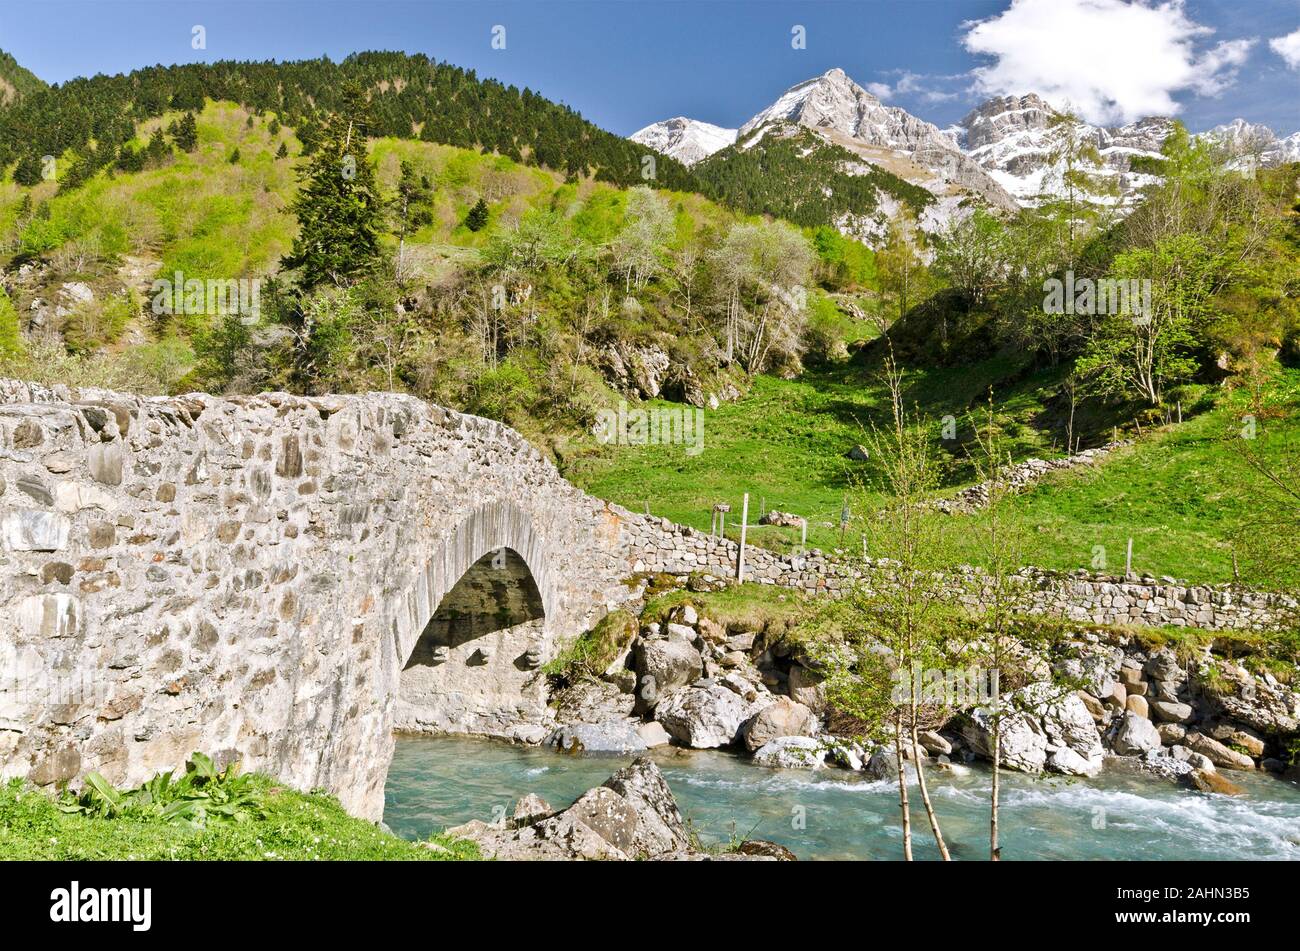 Nadau pont par l'intermédiaire de la rivière Gave de Gavarnie est un pont de pierre sur le chemin du village de Gavarnie au cirque de montagne, forêt, pentes et Ambama snow Banque D'Images